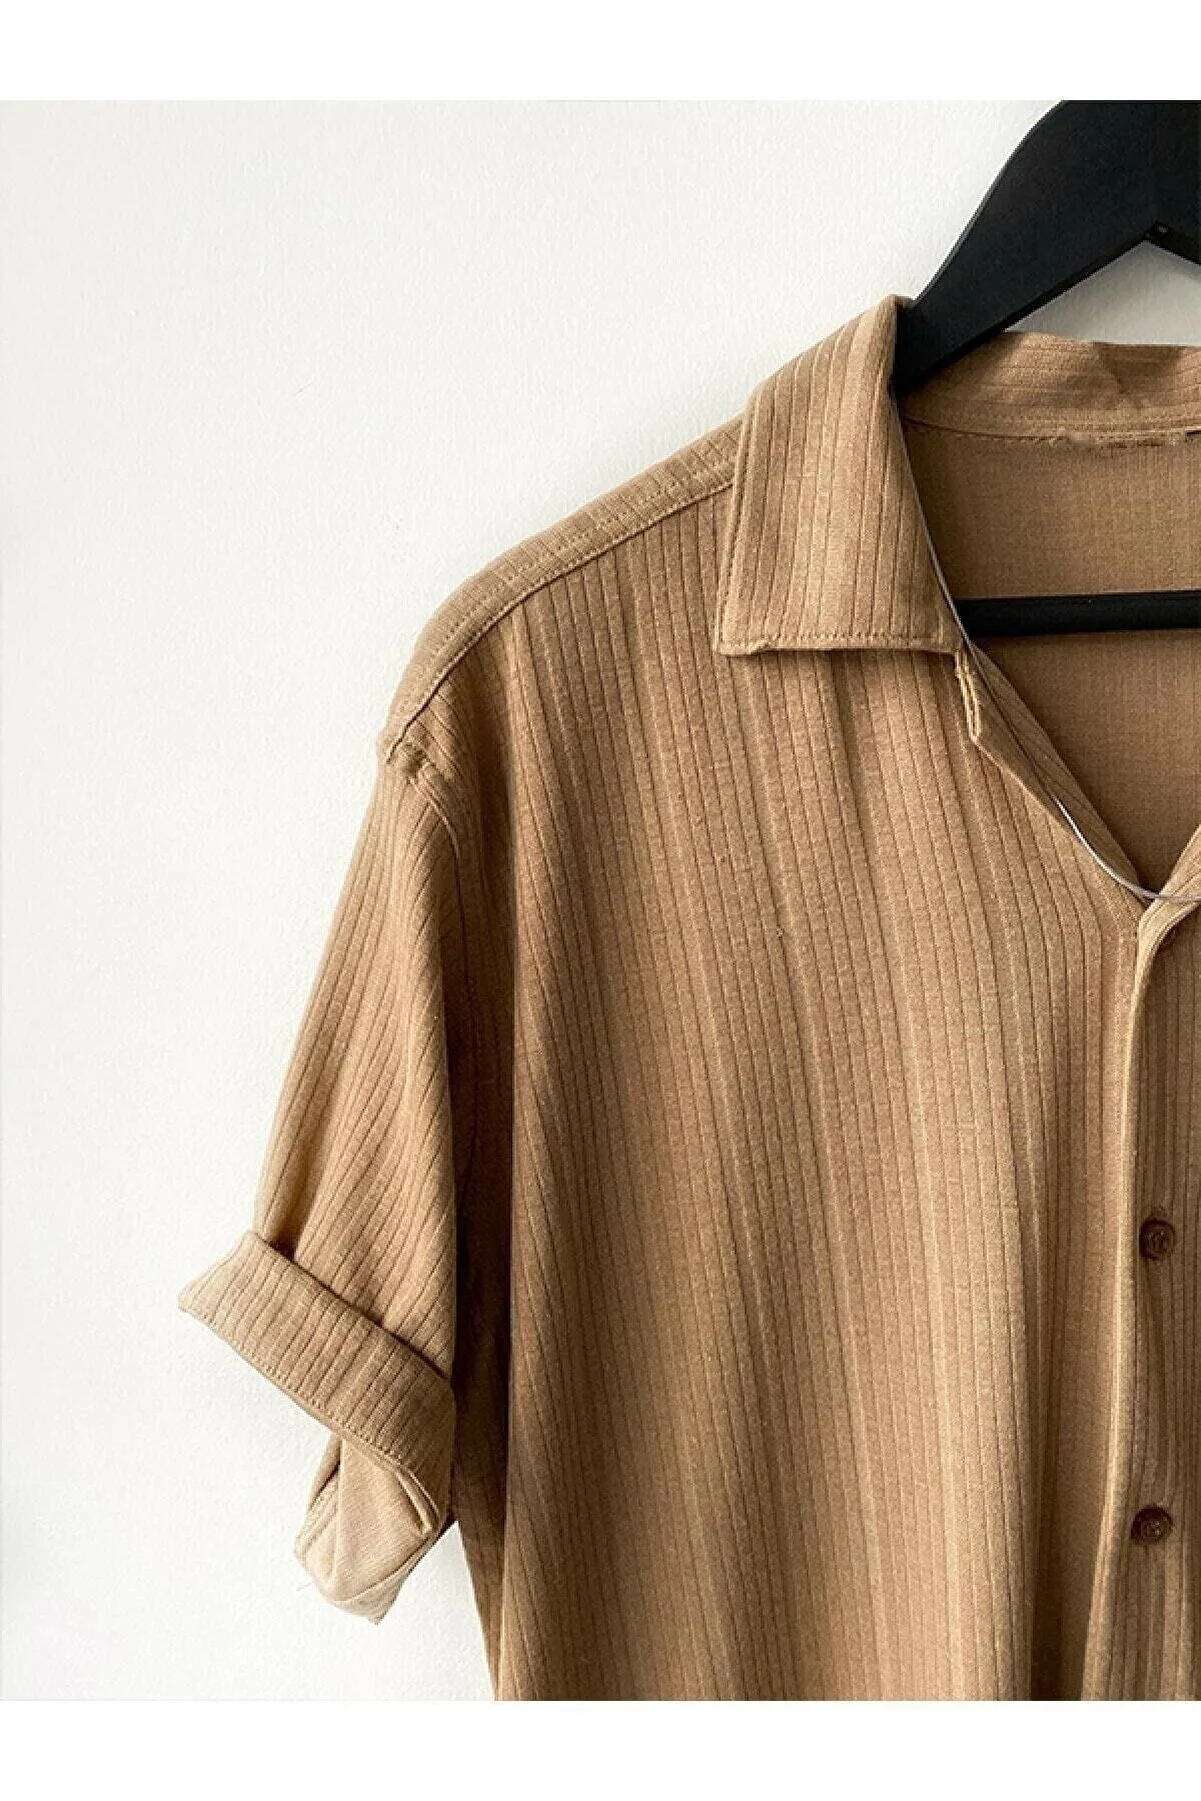 HAWKKING Herren-Sommer-Kurzarmhemd aus beige gemusterter Baumwolle HWK2022DÖÖ